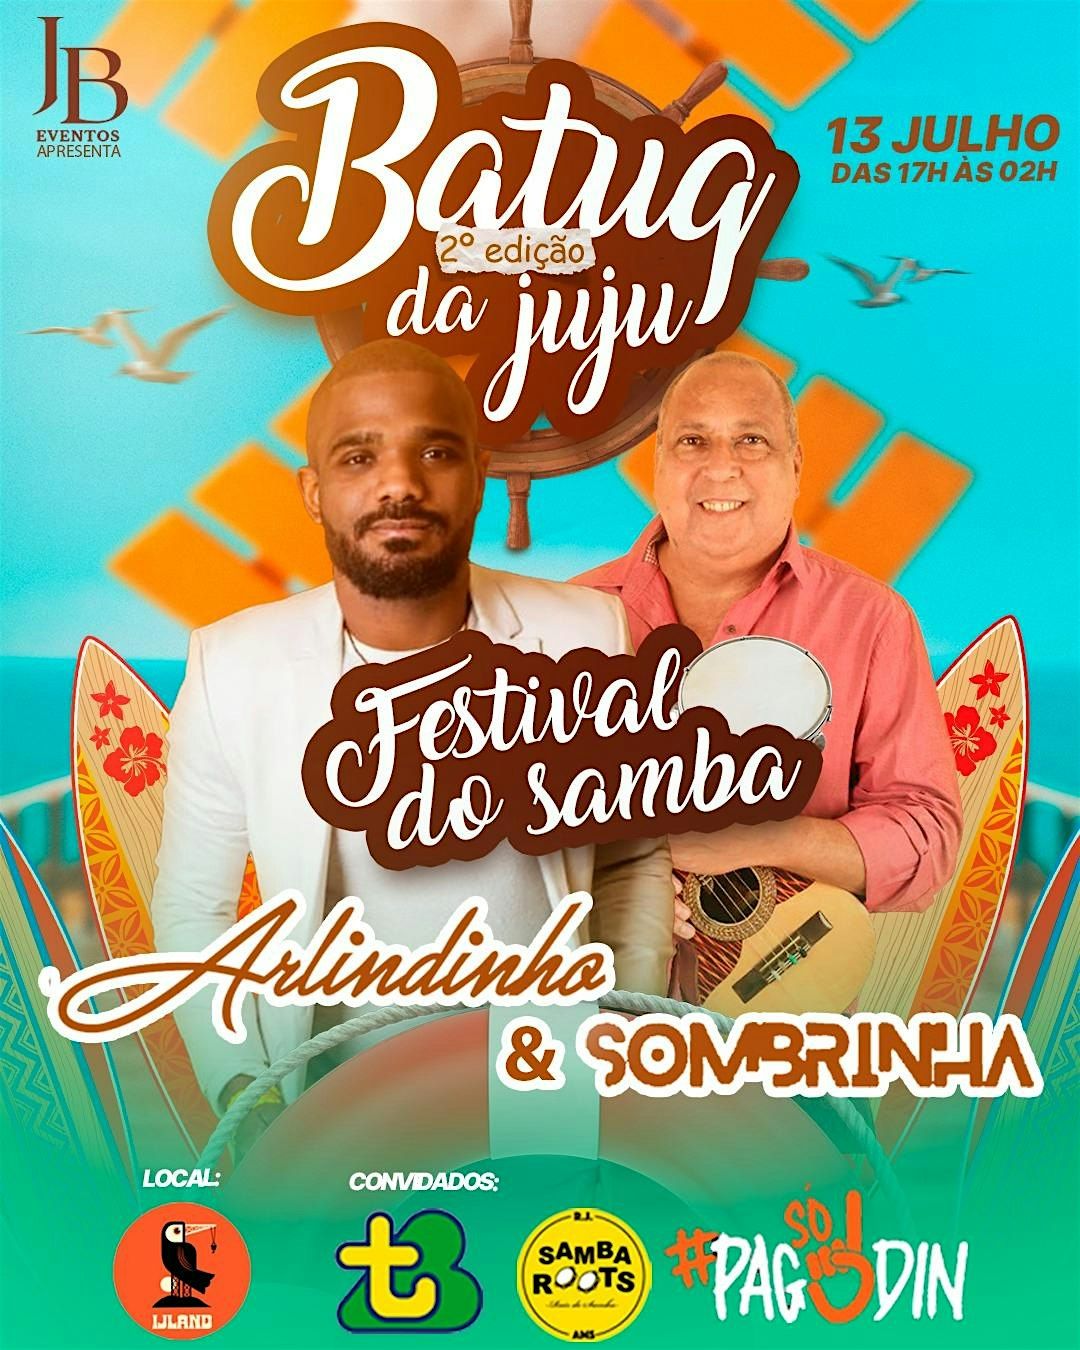 BatuQdaJuJu edi\u00e7\u00e3o festival do samba com Sombrinha & Arlindinho Cruz.